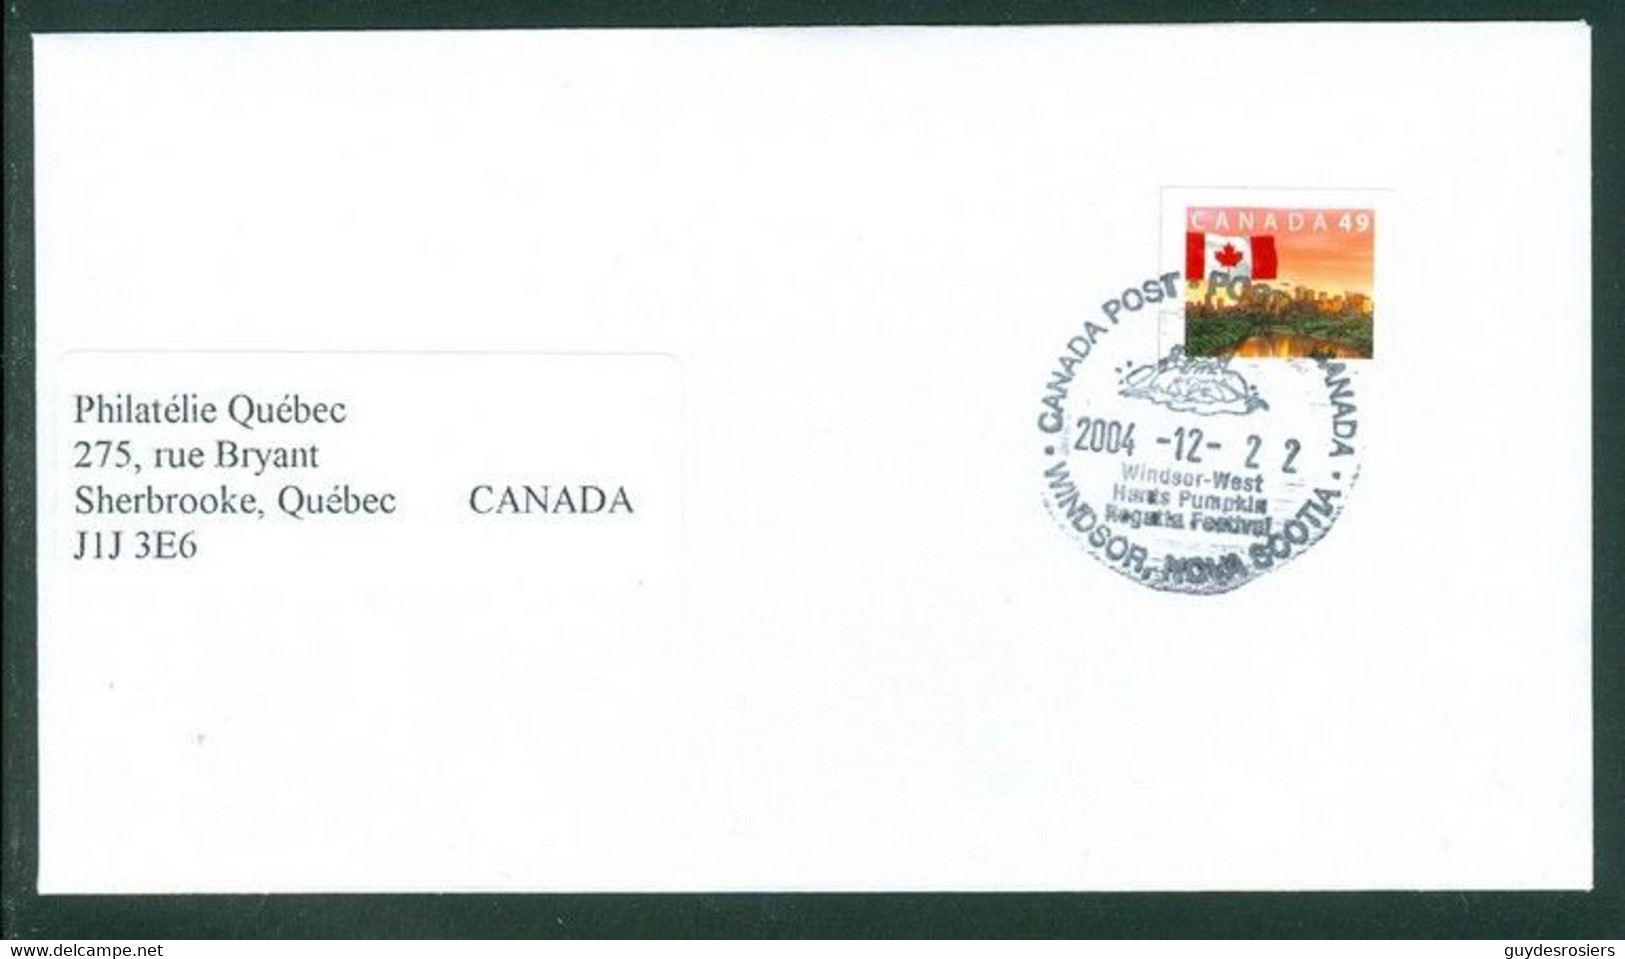 Citrouille Sur Oblitération / Pumpkin On Cancel; Timbres Scott # 2011 Stamp; Oblitération WINDSOR Cancel (8230) - Covers & Documents